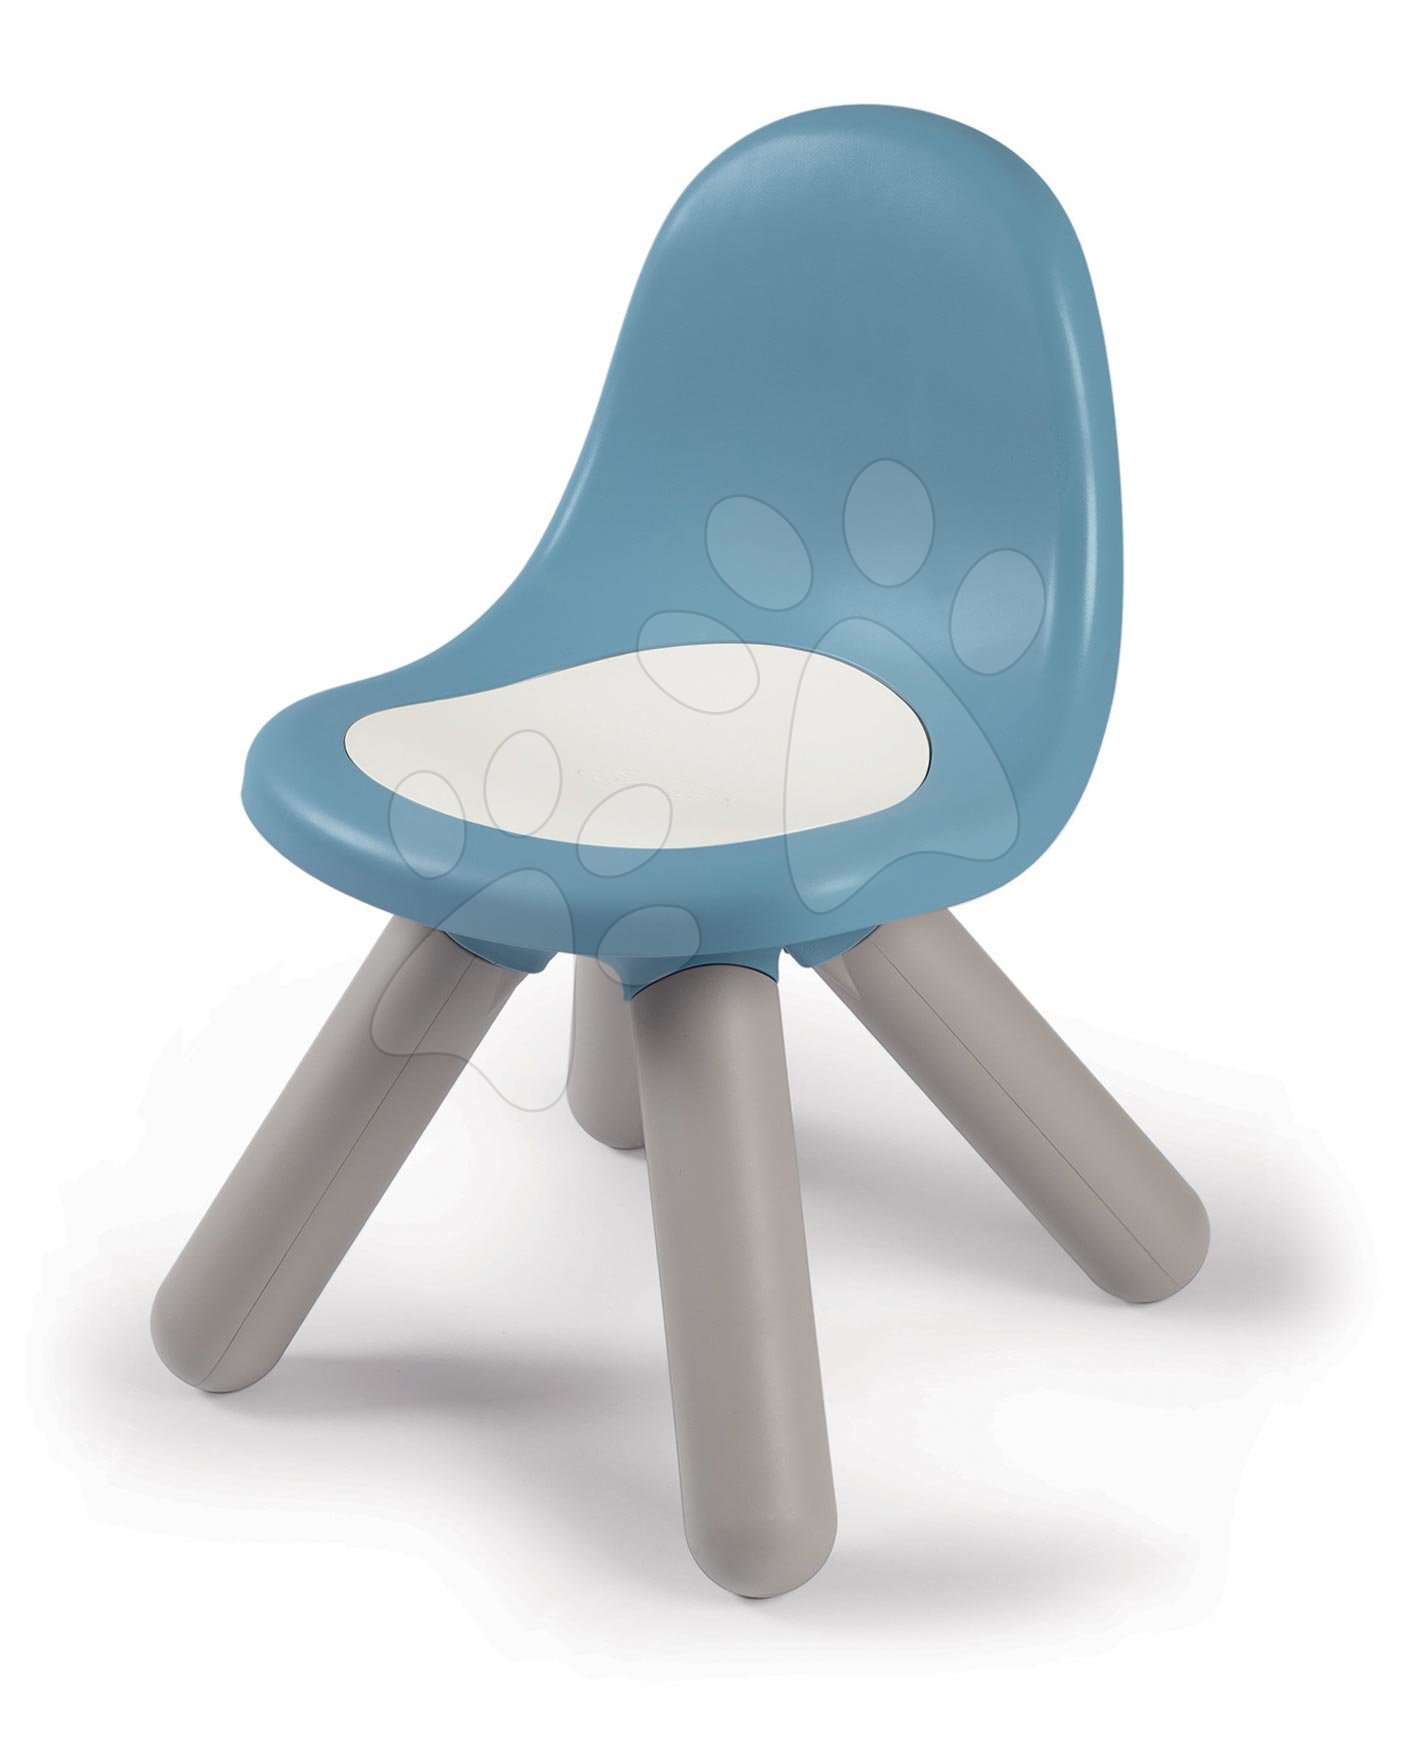 Stolička pre deti KidChair Storm Blue Smoby modrošedá s UV filtrom 50 kg nosnosť výška sedadla 27 cm od 18 mes